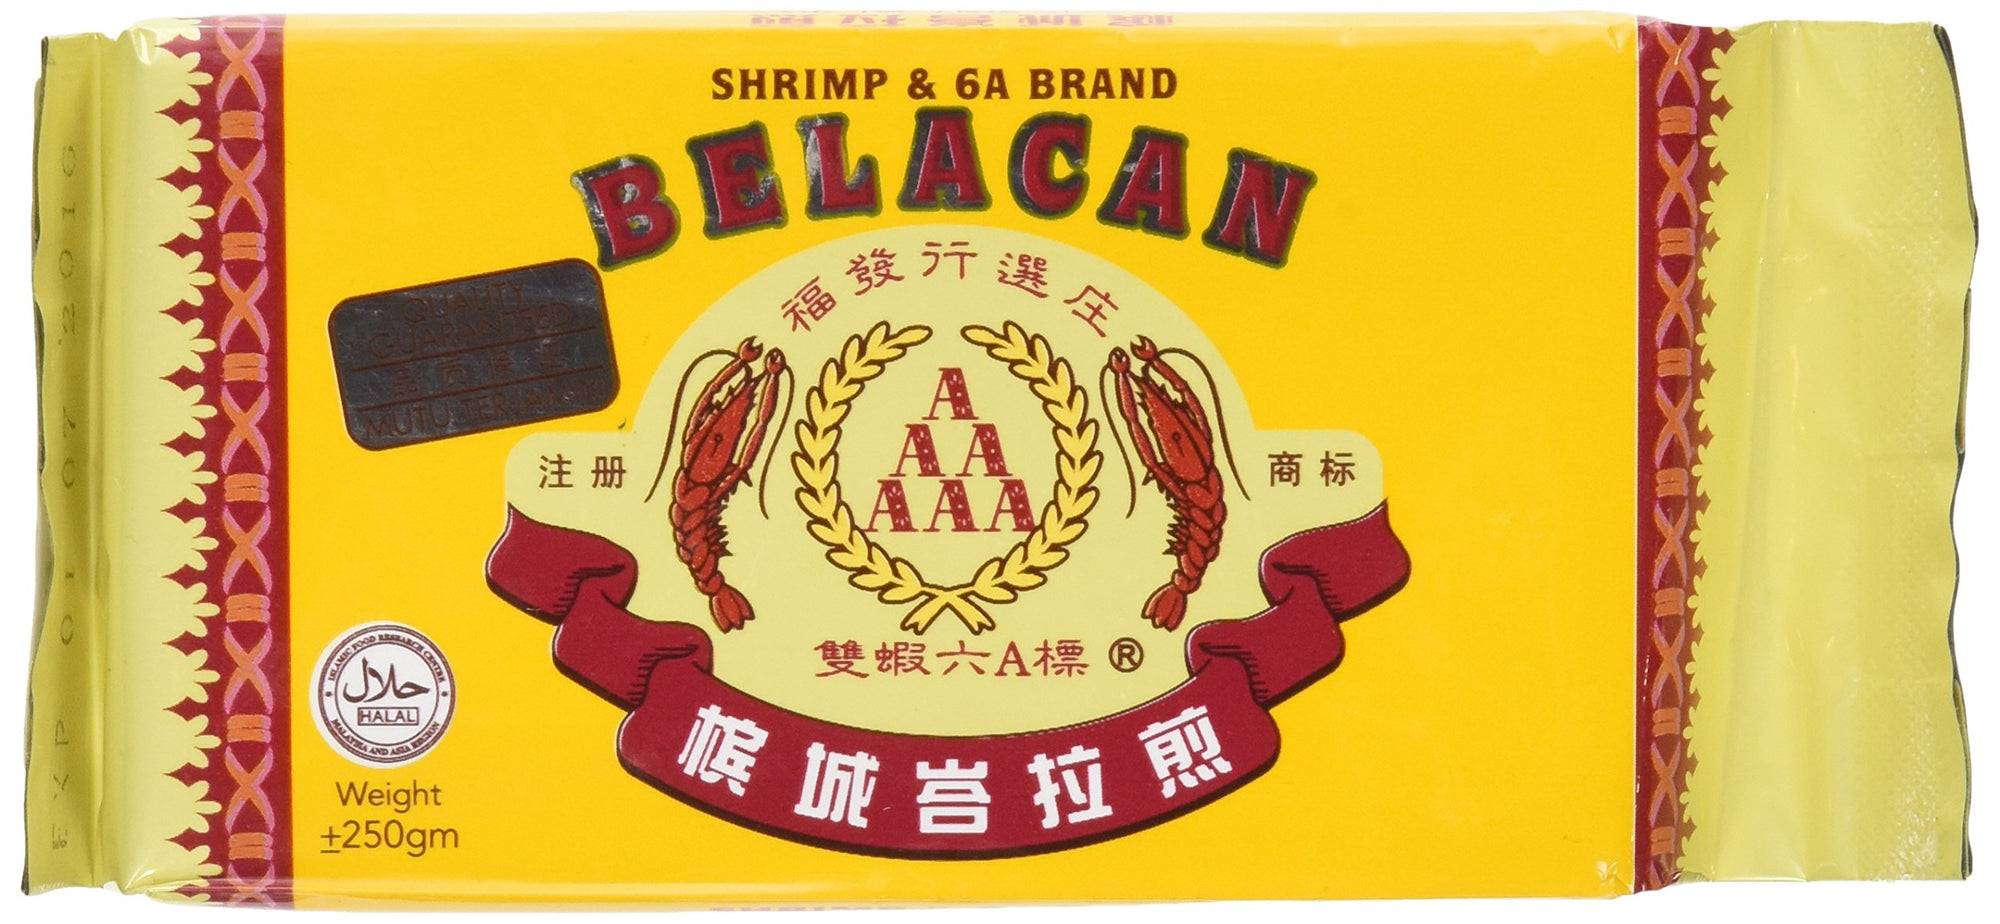 Belacan Shrimp Paste - Shrimp & 6A Brand (250g/8.82oz) Product of Malaysia